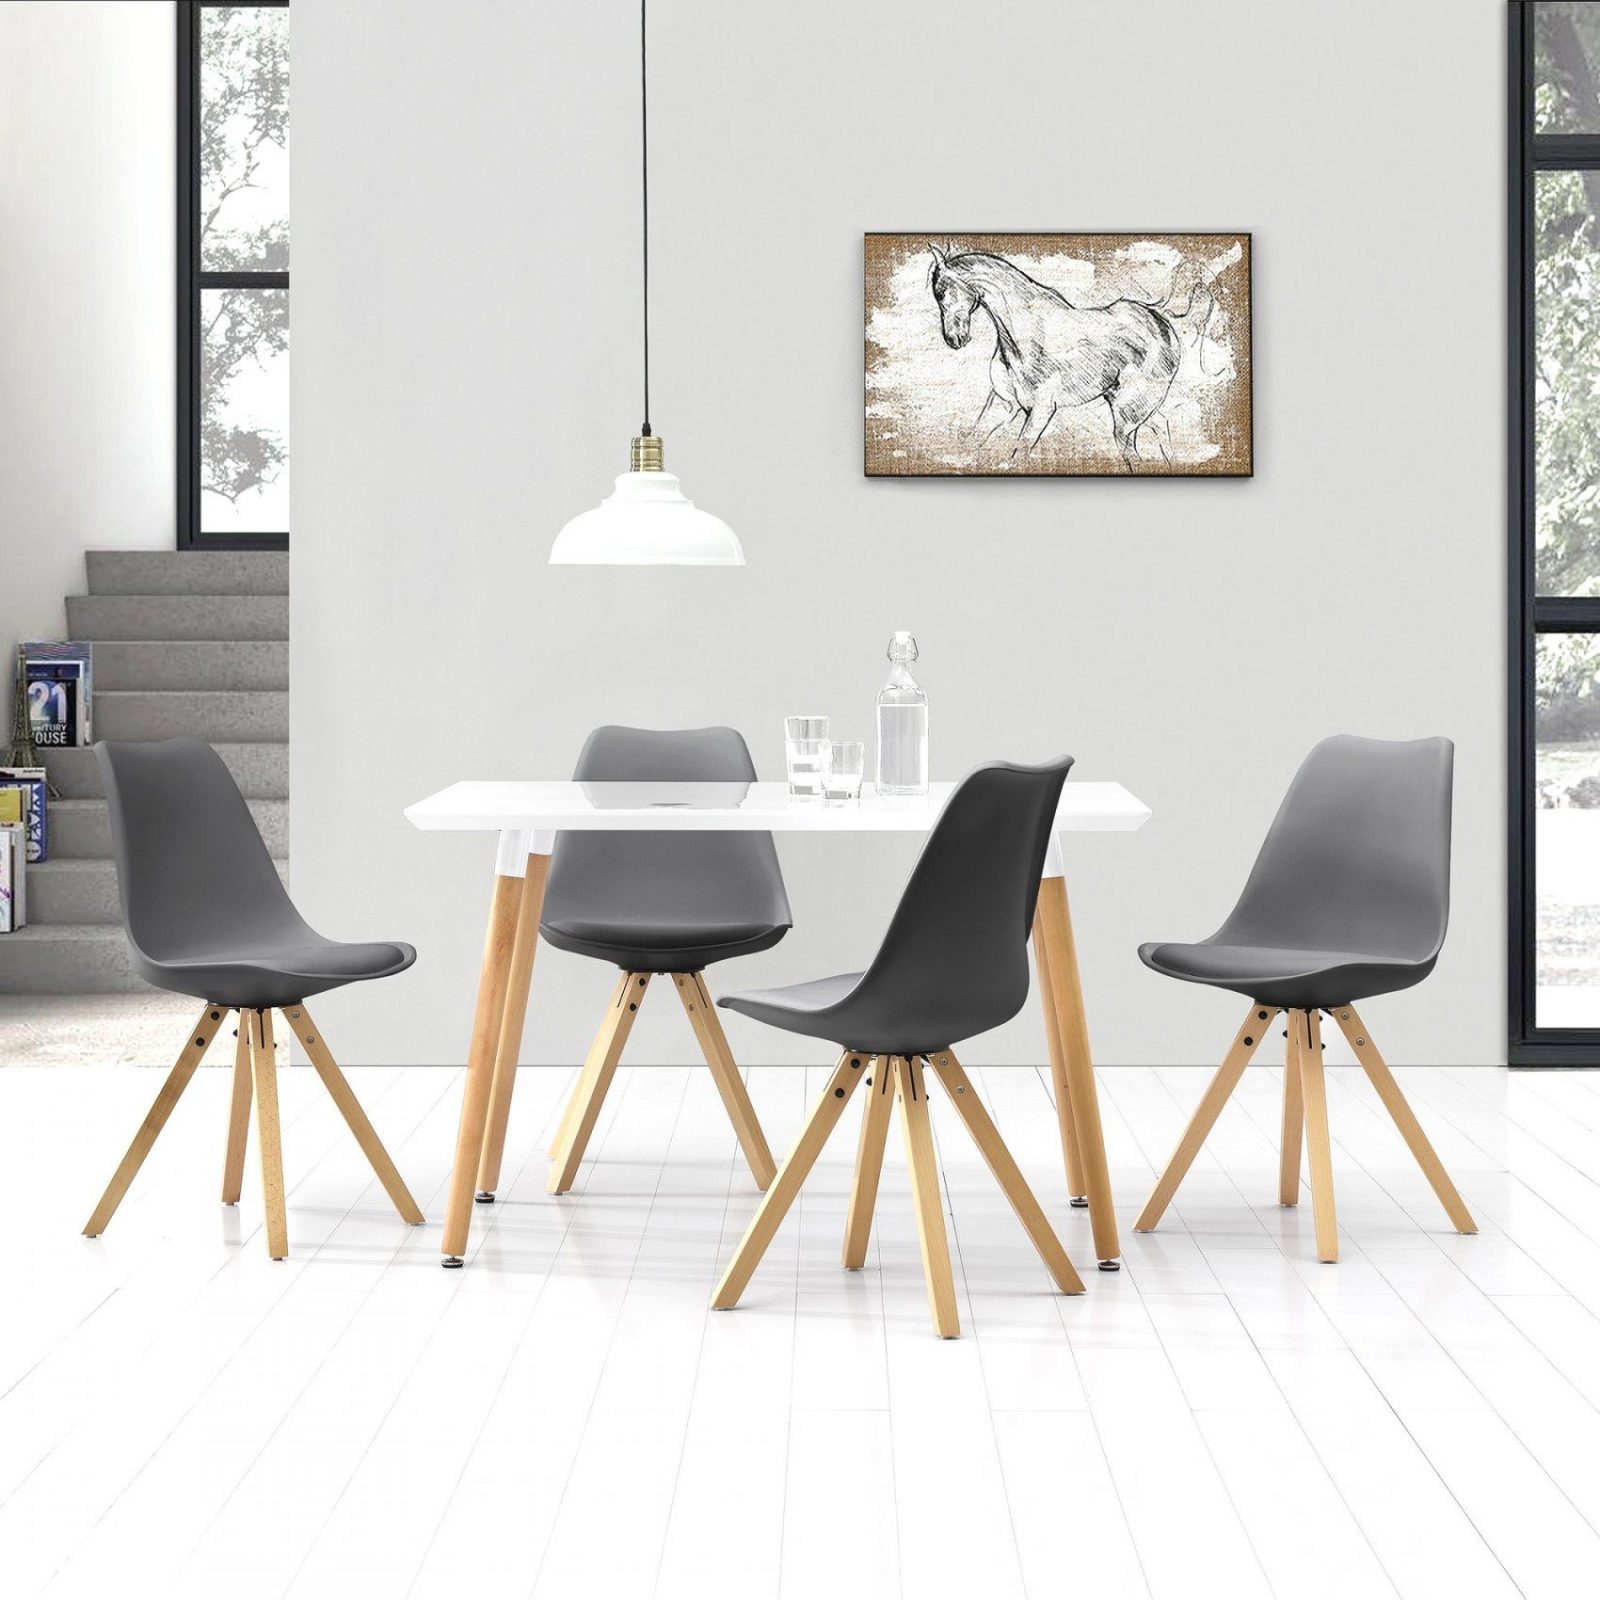 Günstige Ideen Küchen Tische Und Tolle Küchentische Stühle Deutsche von Tisch Und Stühle Für Küche Photo